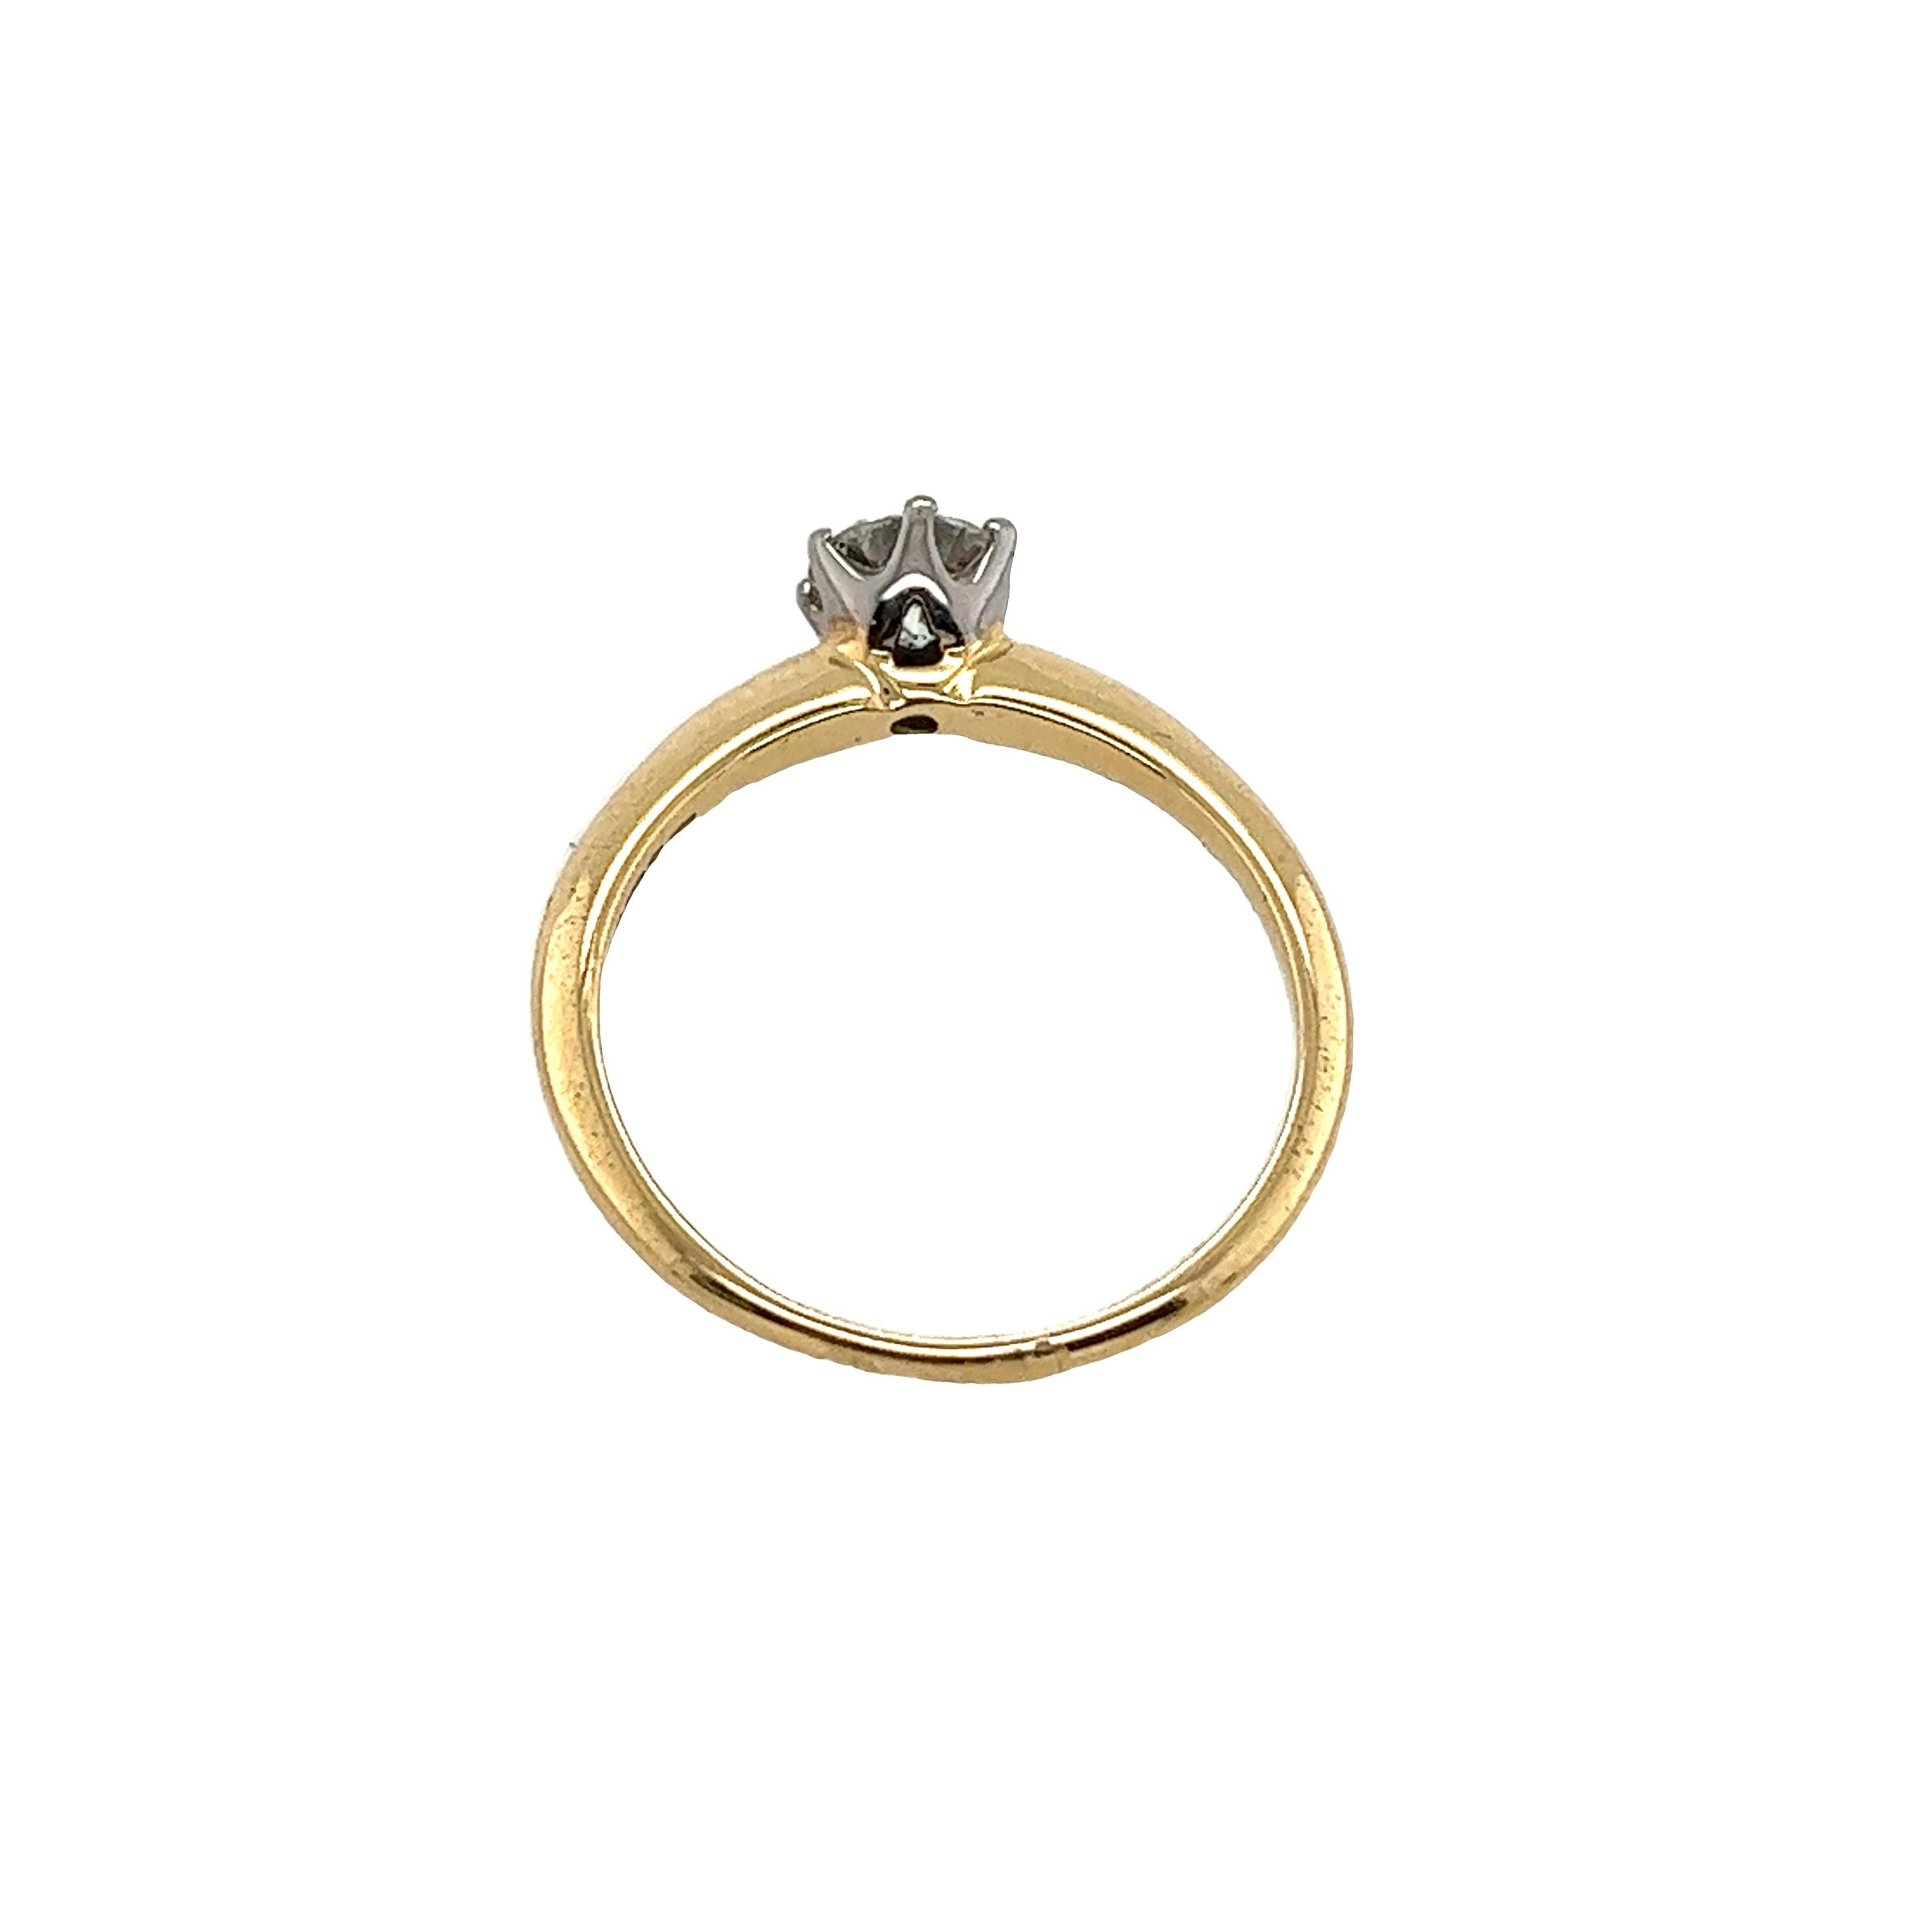 Ein schöner Solitär-Diamantring aus 18 Karat Gelb- und Weißgold, besetzt mit einem runden Diamanten im Brillantschliff von 0,50 Karat. Dieser Verlobungsring ist ein perfektes Symbol für Ihr Engagement in der Liebe.

Zusätzliche Informationen: